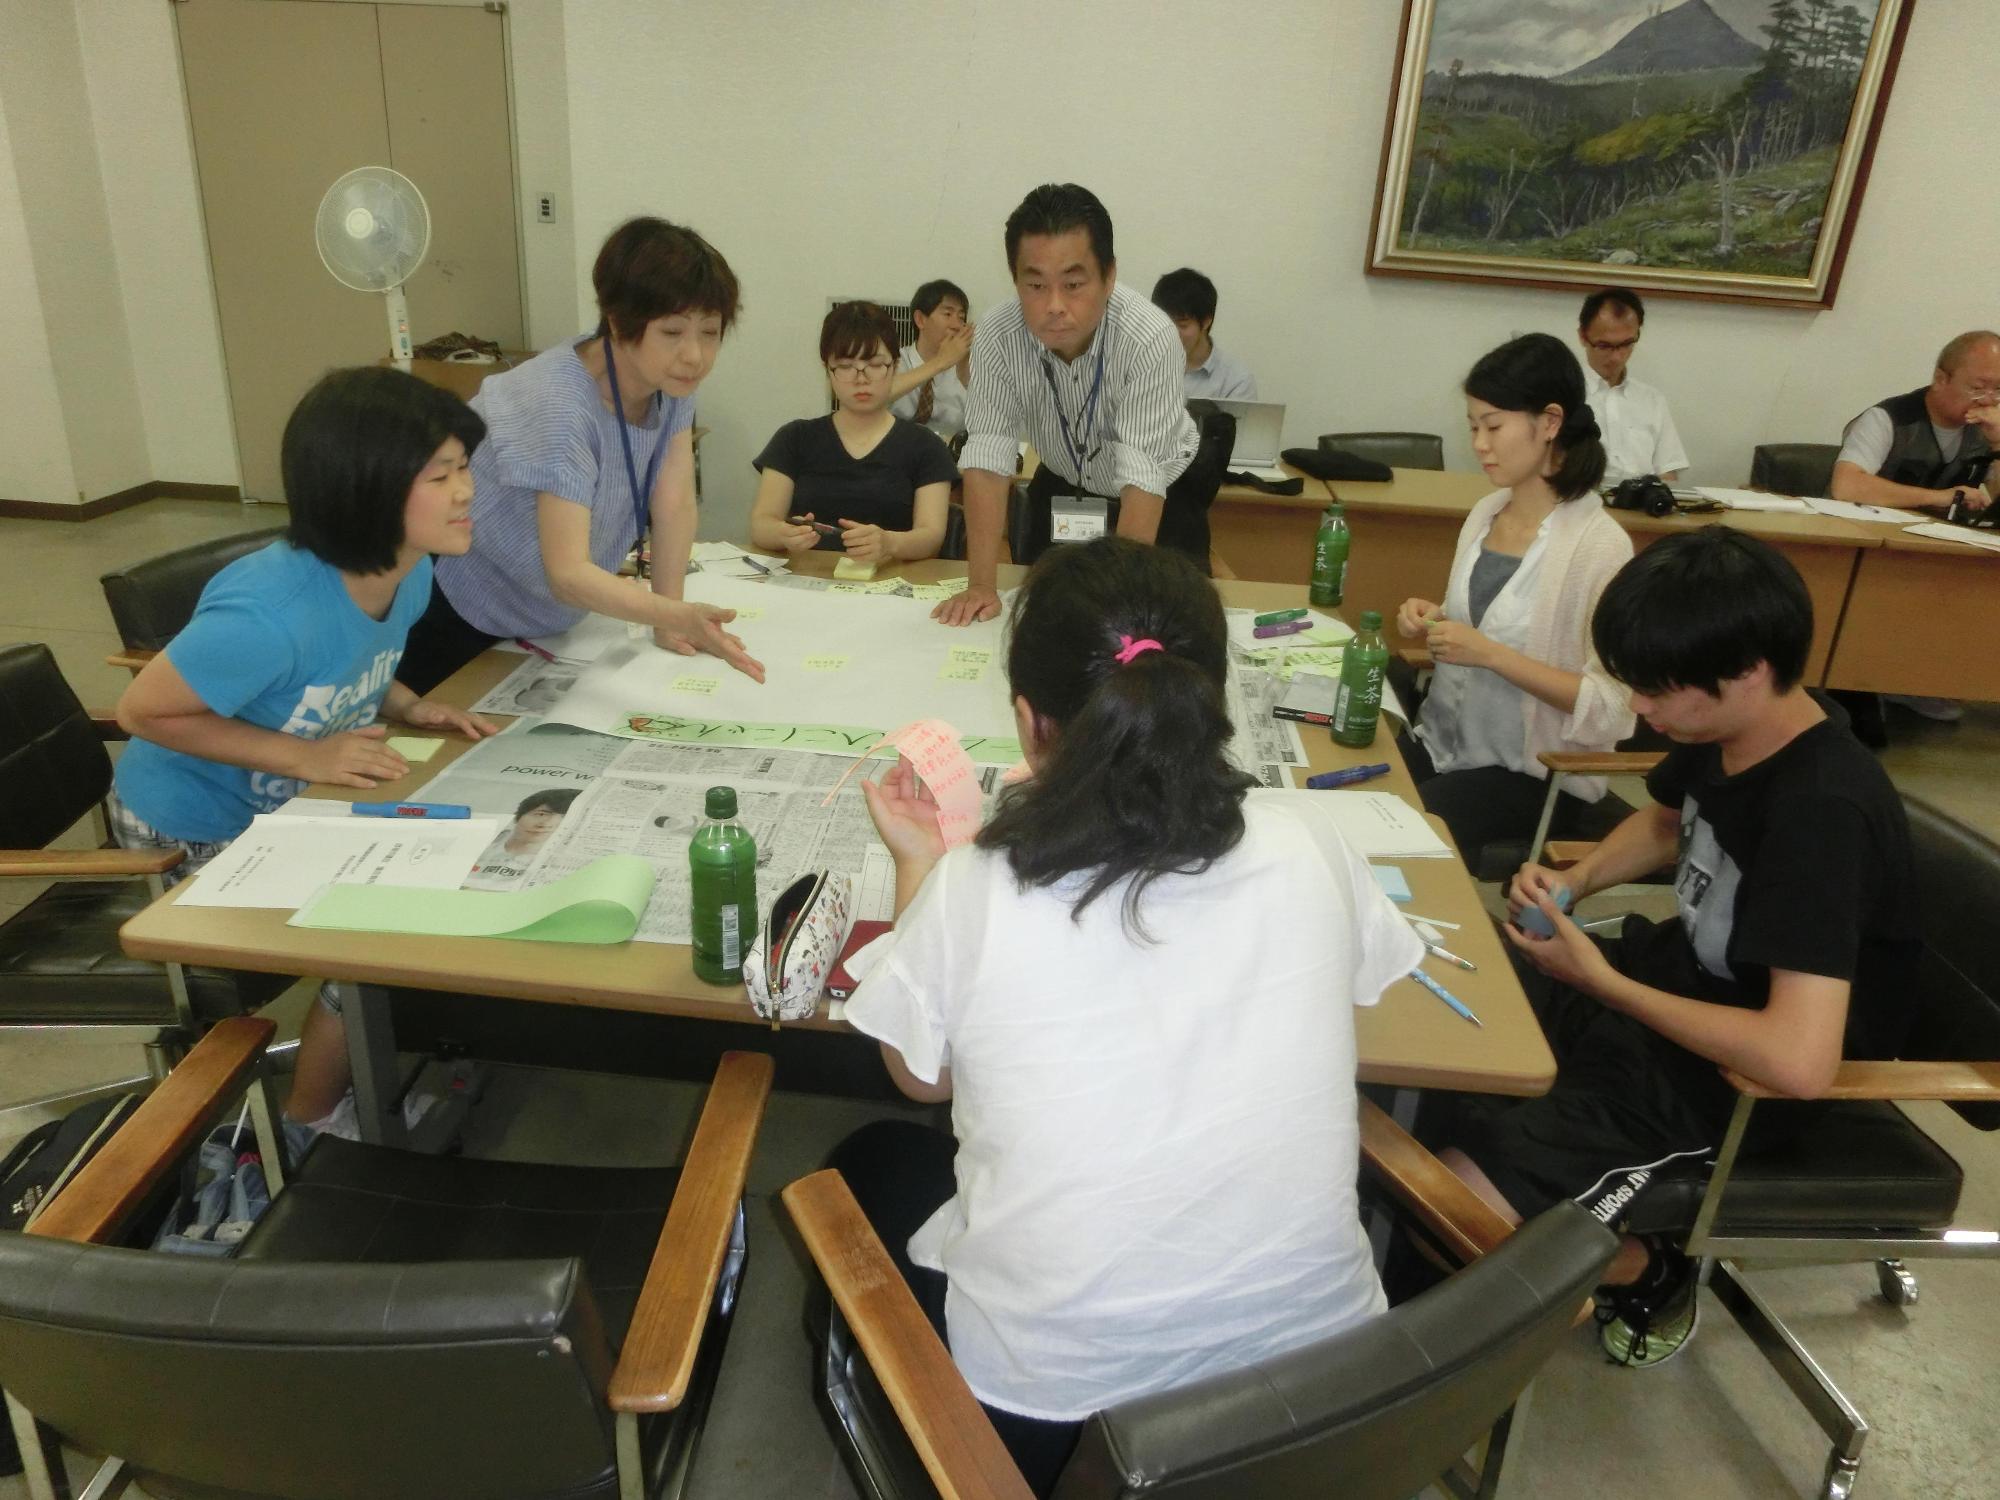 7人で机を囲み意見を出し合っている参加者の写真